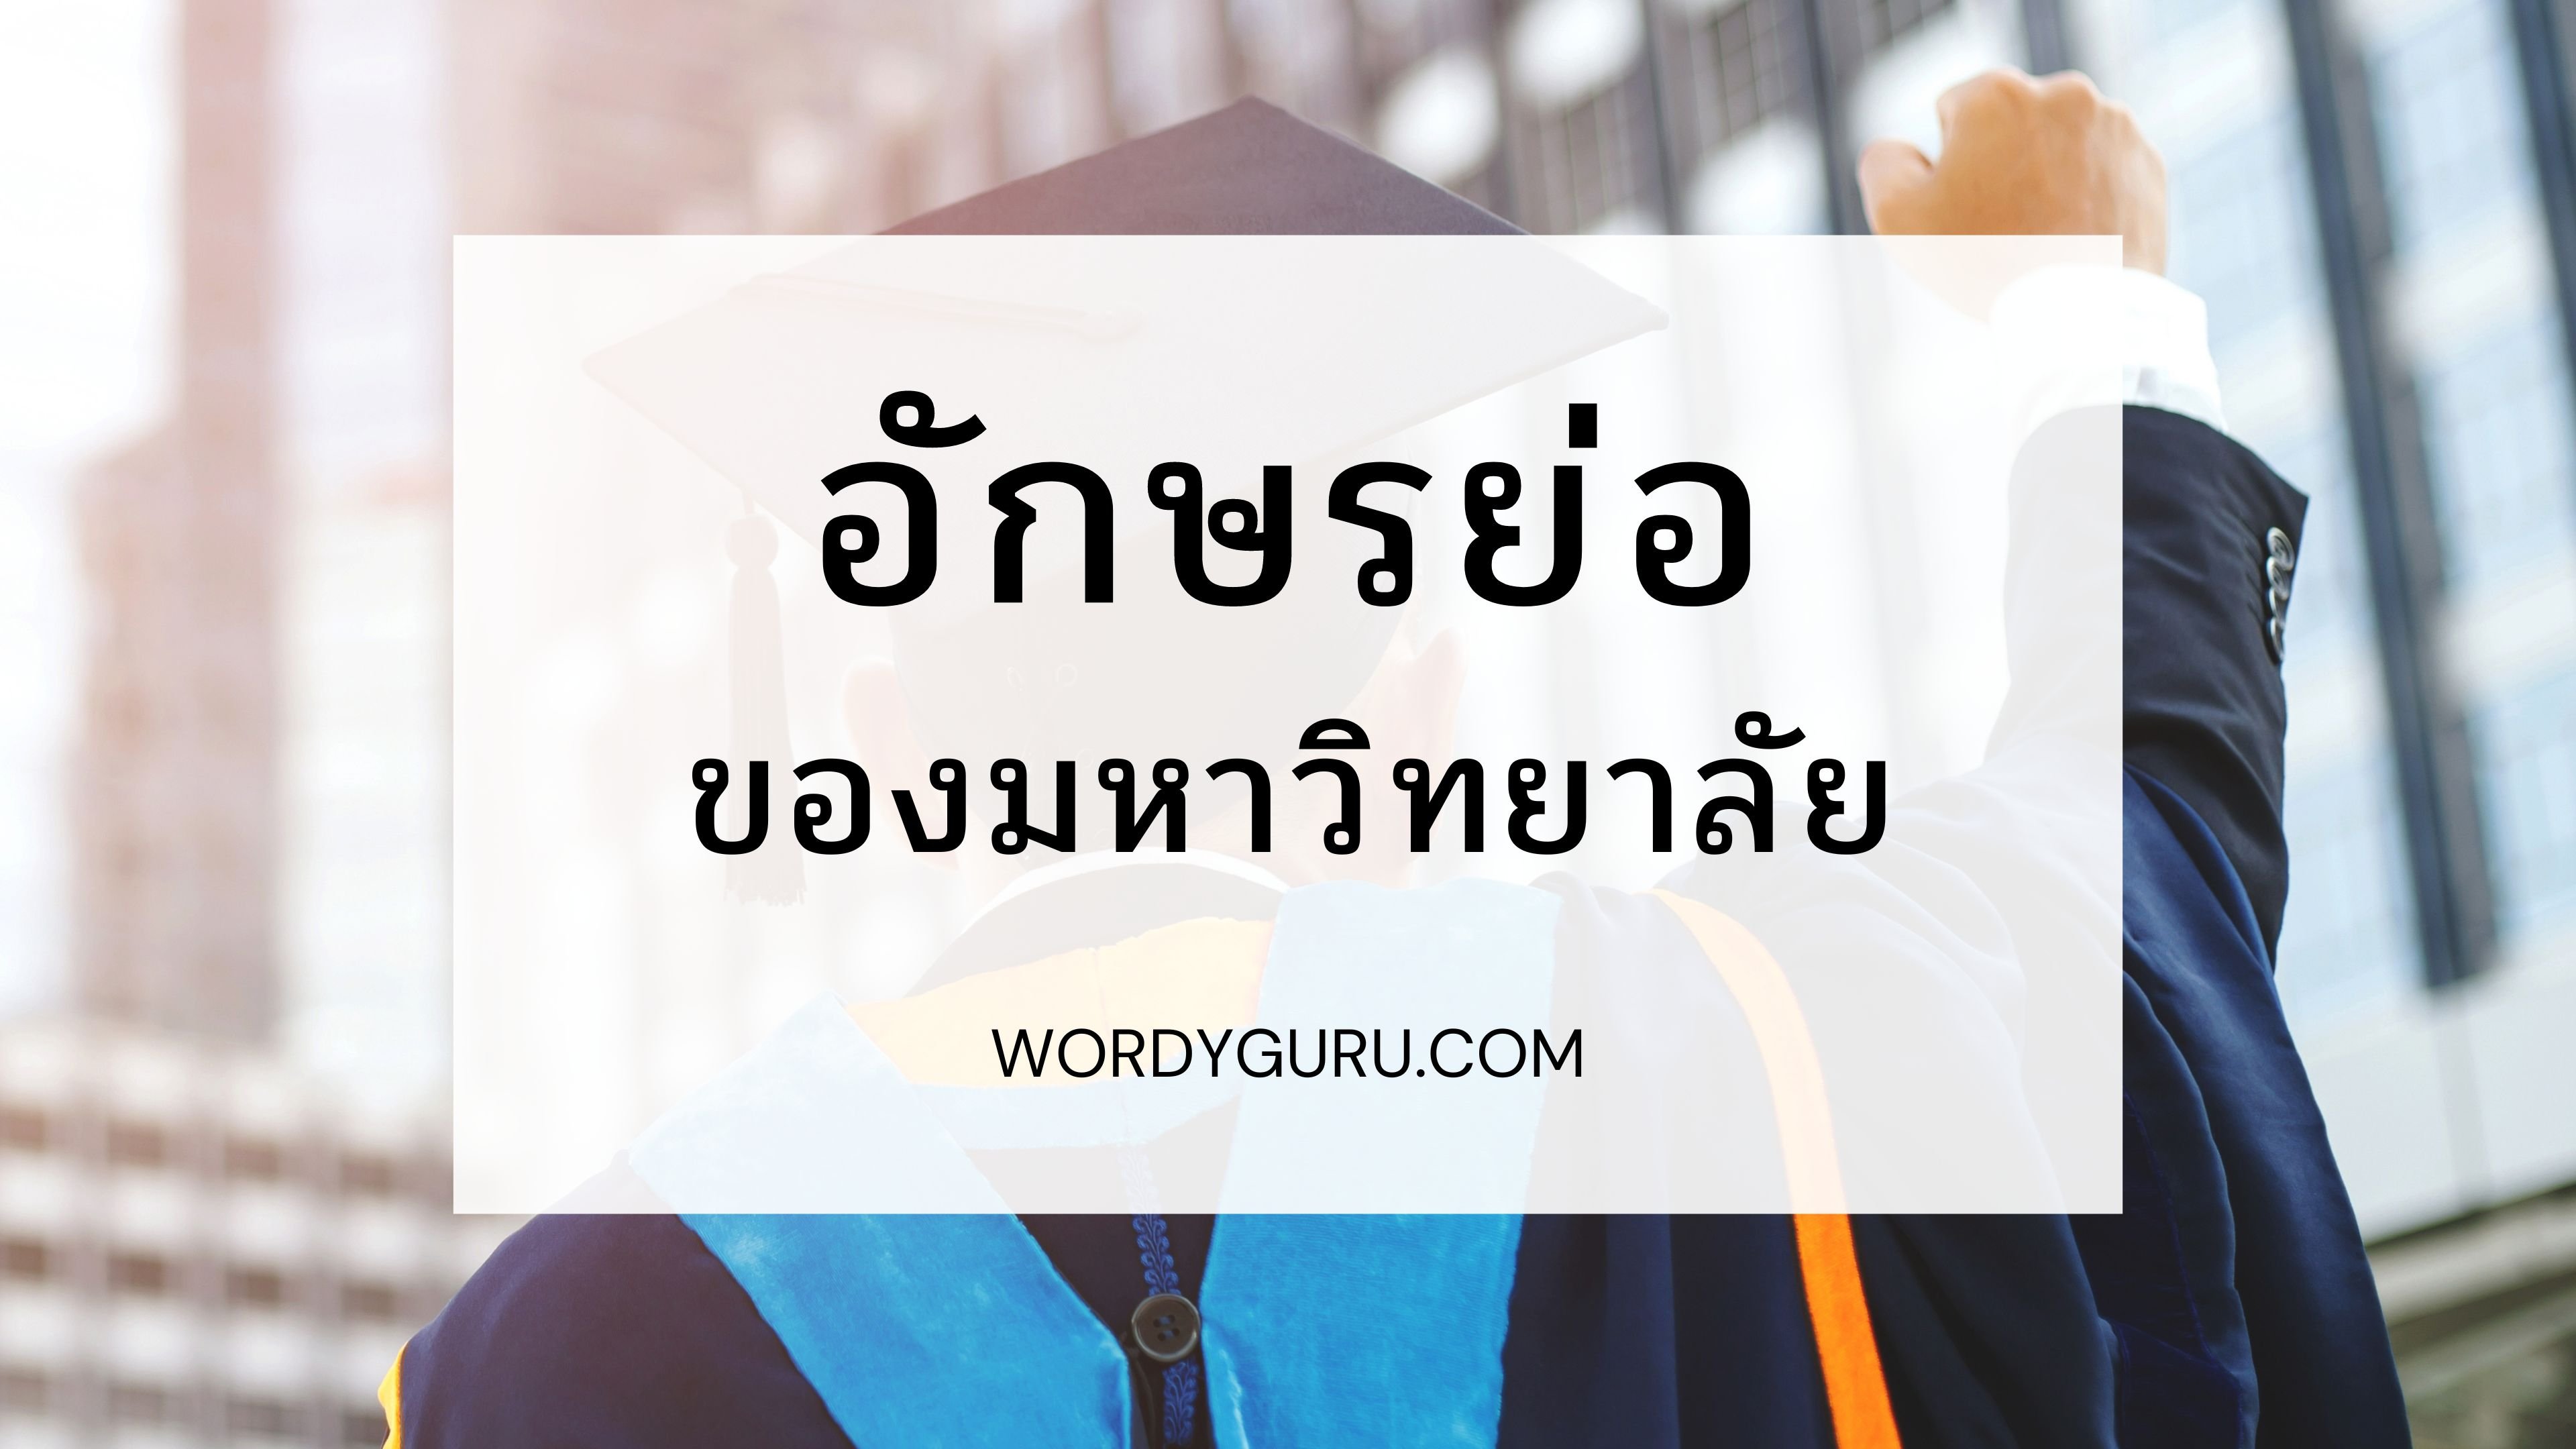 ต้อนรับเปิดเทอมด้วยเกร็ดความรู้อักษรย่อเกี่ยวกับชื่อของมหาวิทยาลัยในประเทศไทย ซึ่งแต่ละมหาวิทยาลัยก็มีตัวย่อของตัวเองทั้งภาษาไทยและภาษาอังกฤษเพื่อความสะดวกในการเขียน วันนี้เราจึงได้รวบรวมอักษรย่อของมหาวิทยาลัยรัฐ และในกำกับของรัฐทั่วประเทศมาให้ได้ดูกัน